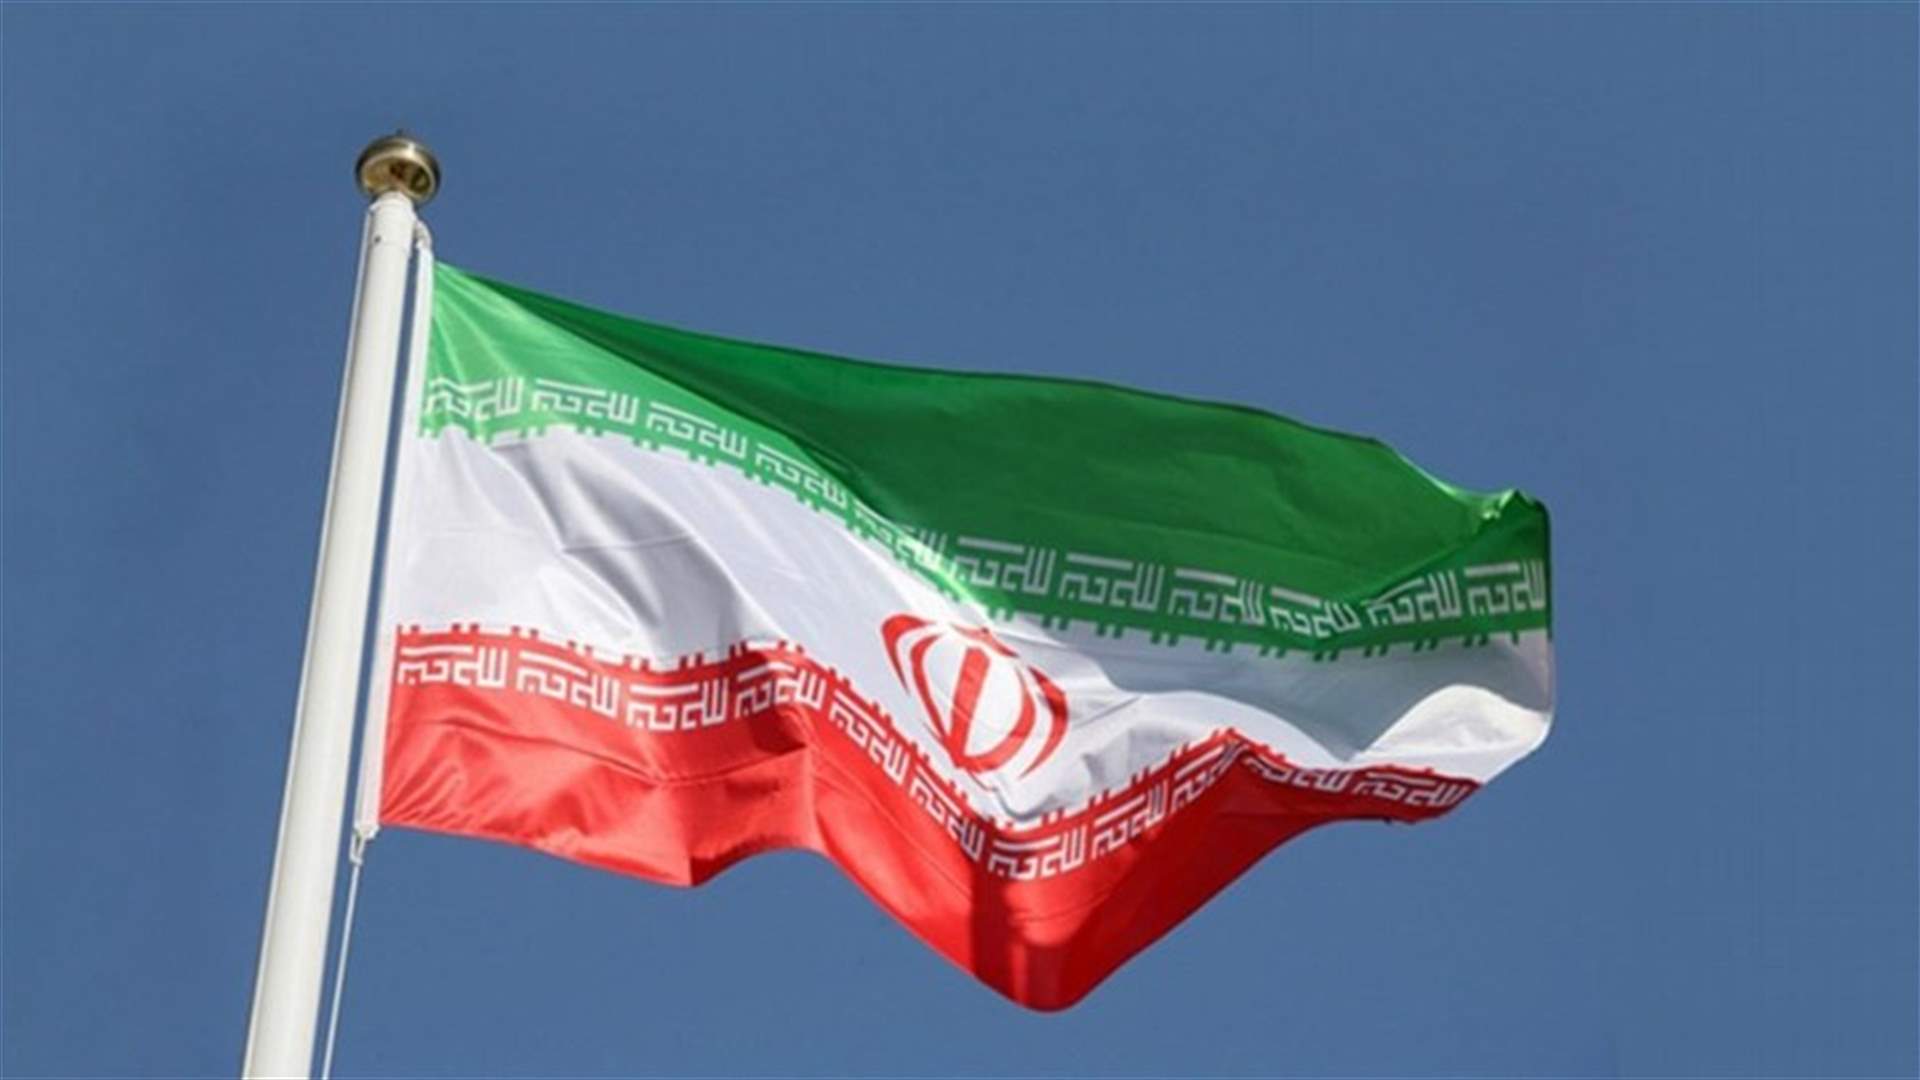 إيران تؤكد إسقاط الجيش طائرة مسيرة تابعة لدولة أجنبية